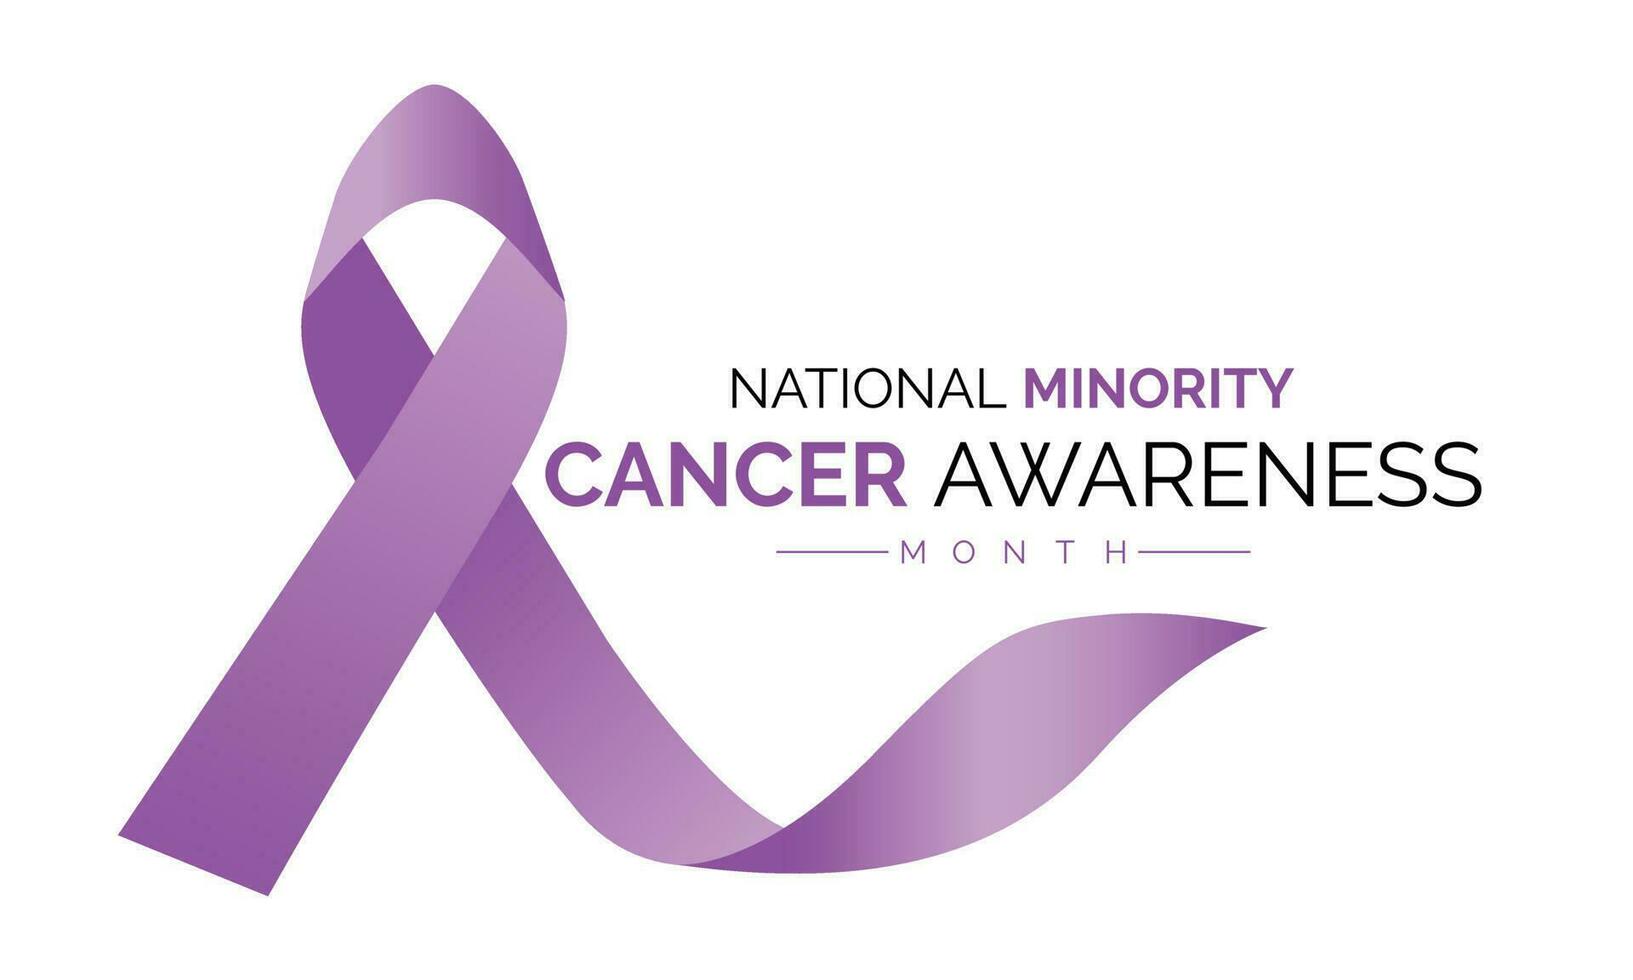 nationale minorité cancer conscience mois de avril. affiche , bannière conception modèle vecteur illustration.